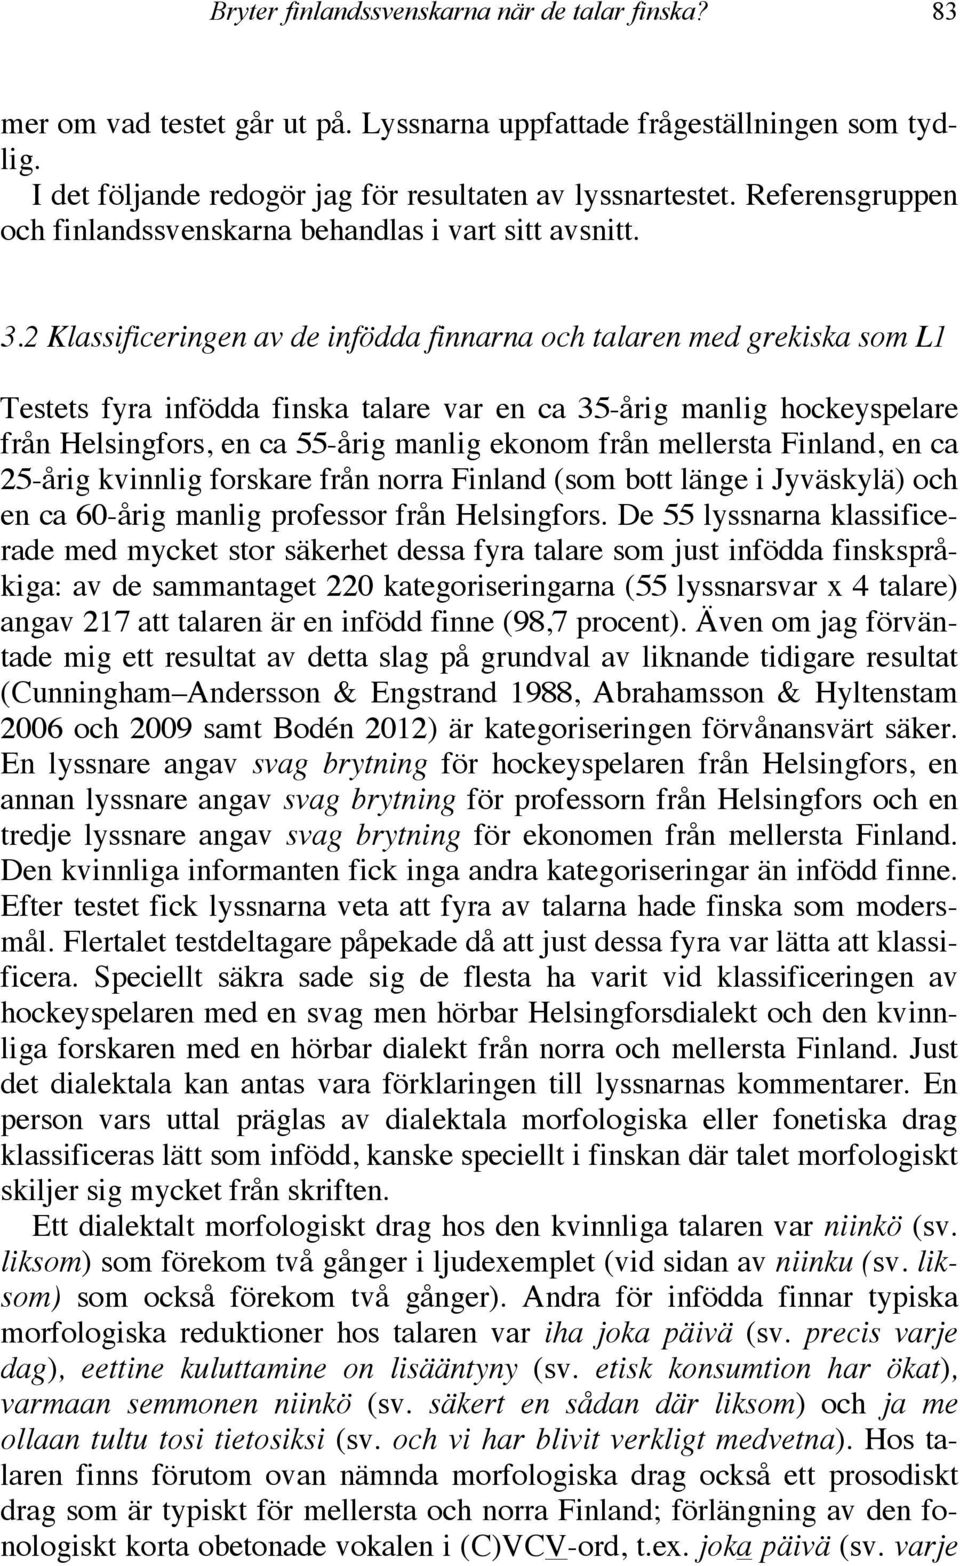 2 Klassificeringen av de infödda finnarna och talaren med grekiska som L1 Testets fyra infödda finska talare var en ca 35-årig manlig hockeyspelare från Helsingfors, en ca 55-årig manlig ekonom från